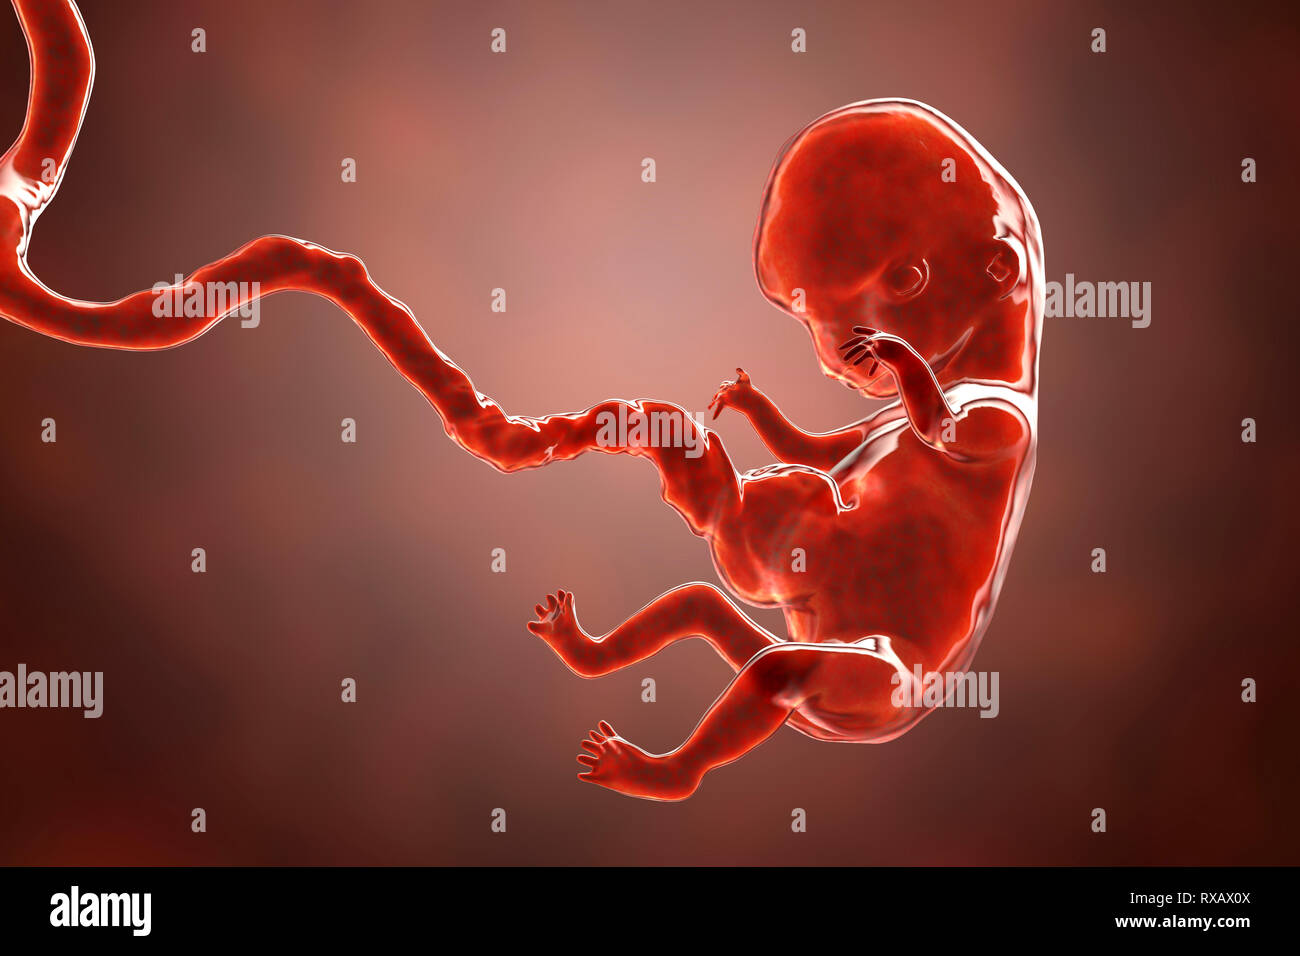 Les droits de l'embryon, 8 semaines, illustration Banque D'Images